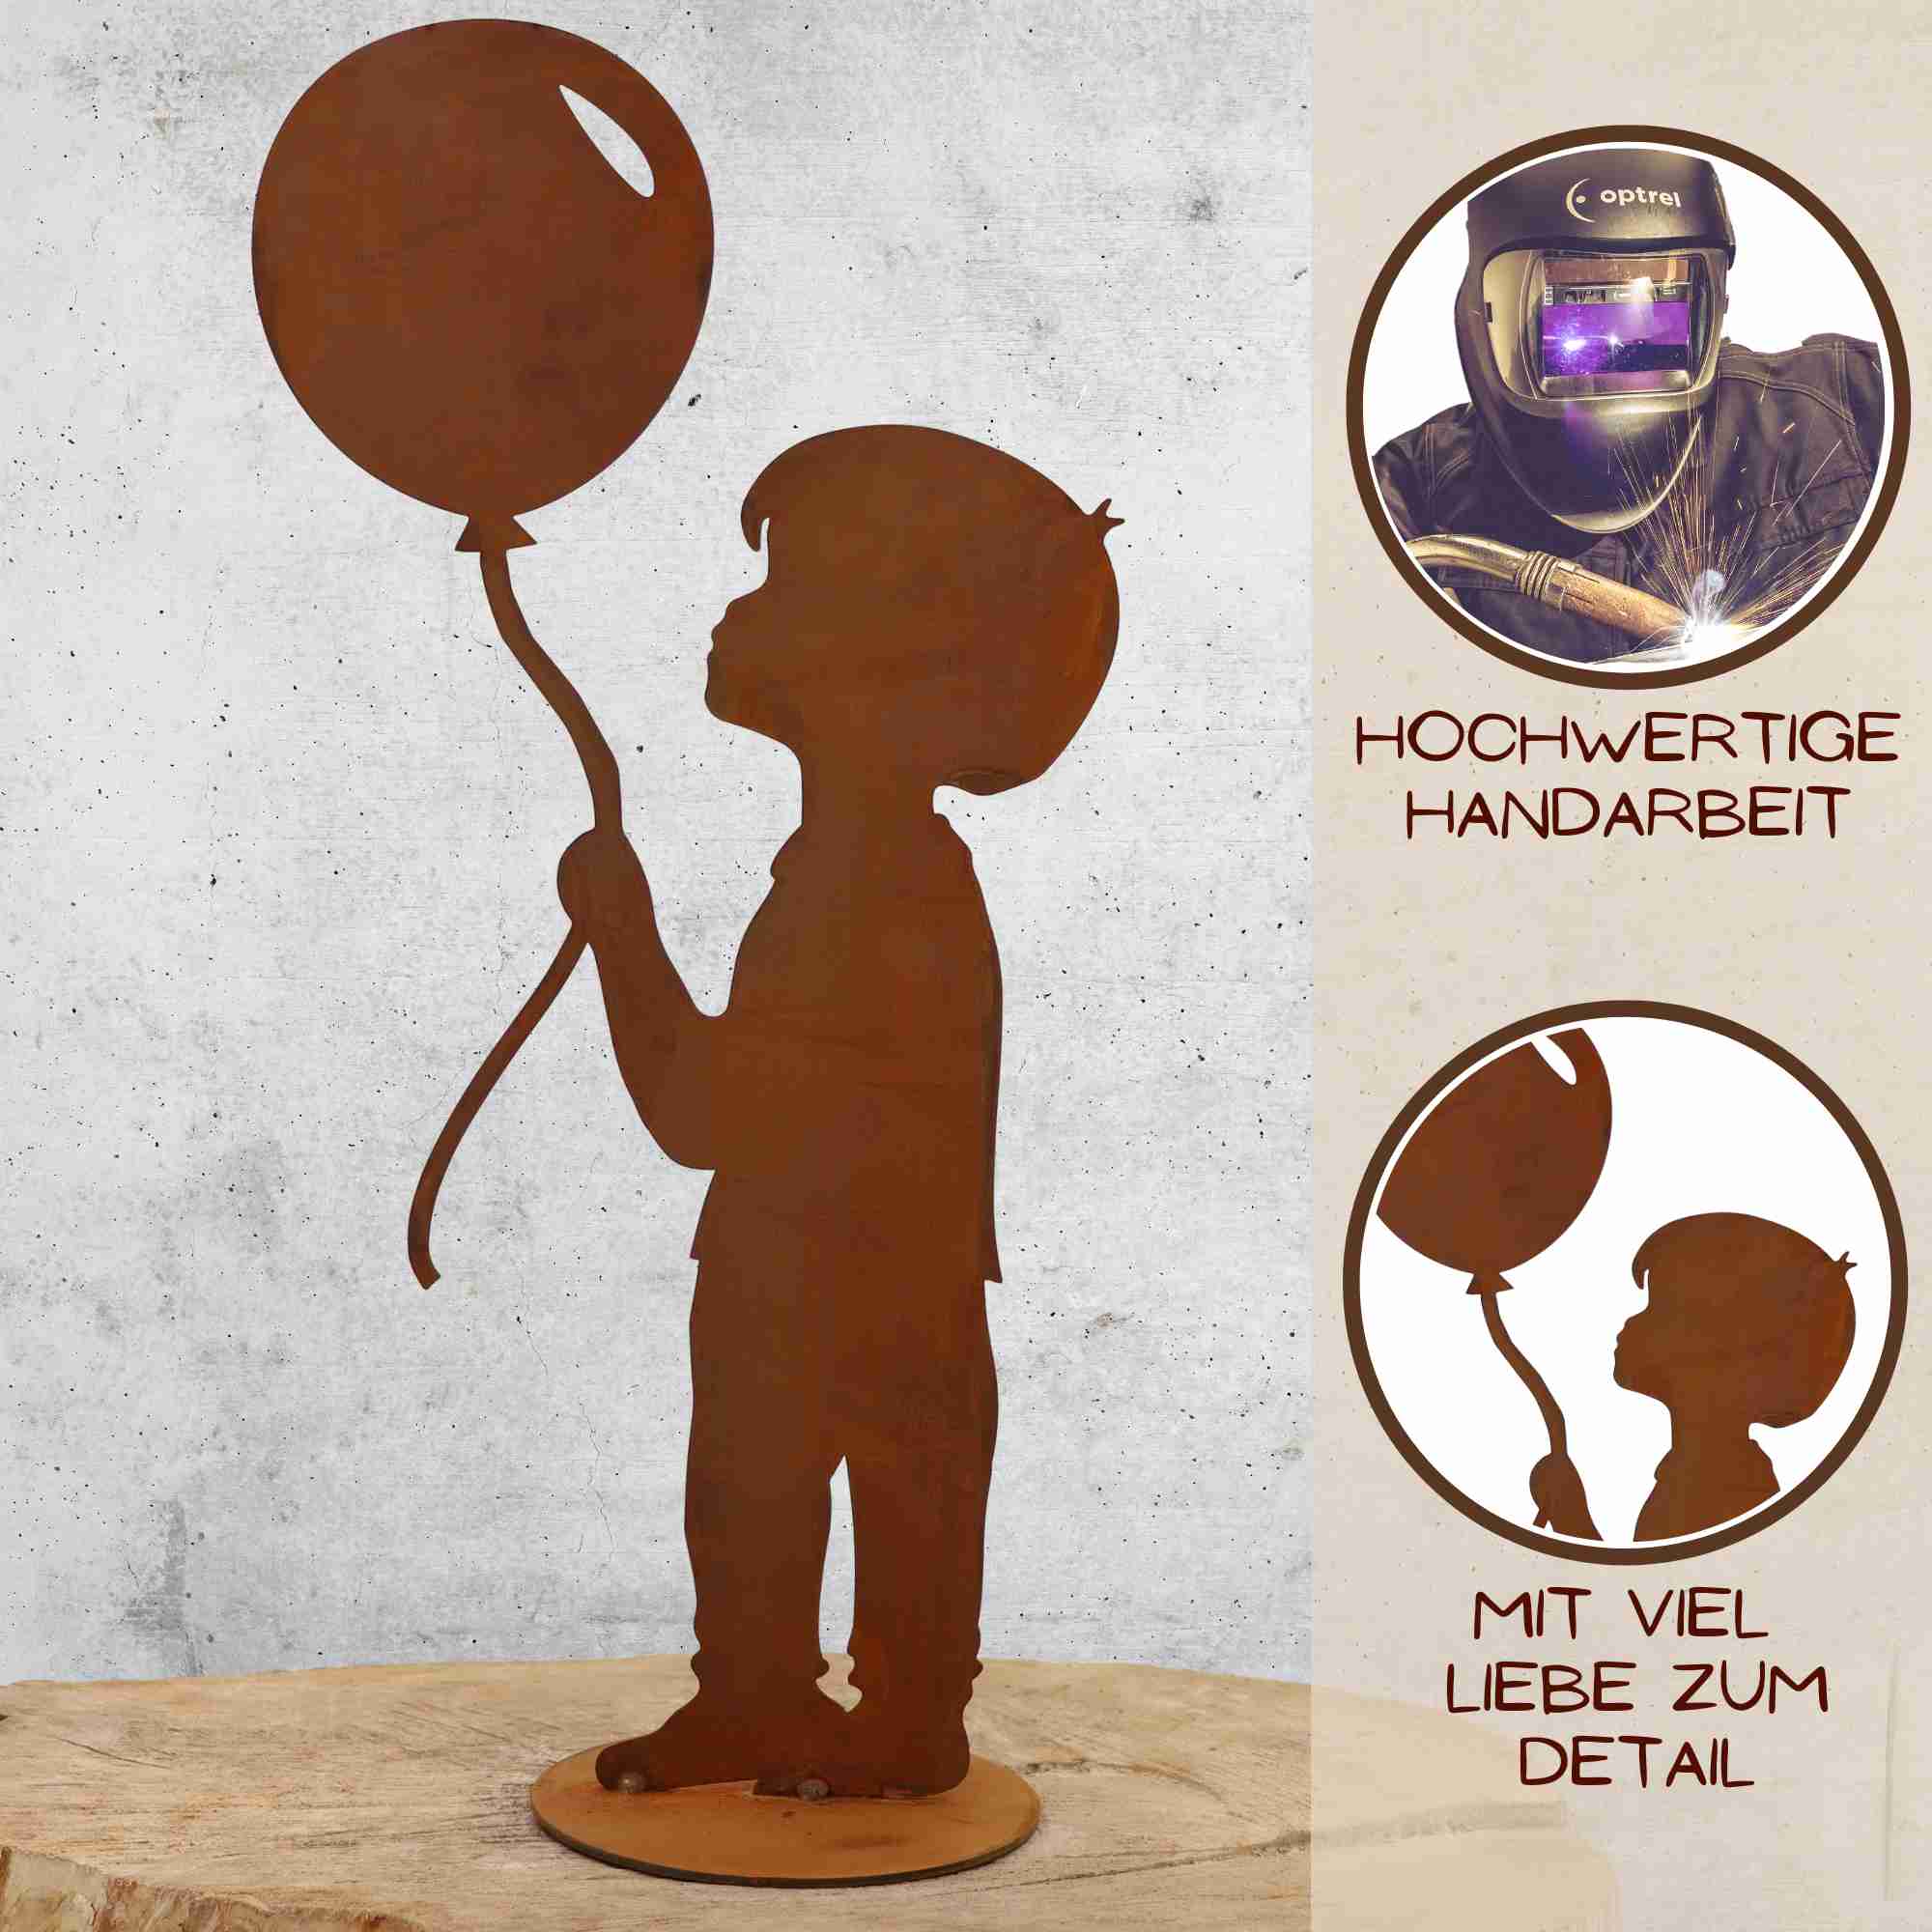 Hochwertig von Hand hergestellte individuell personalisierbare Dekoration in Form eines kleinen Jungen mit Luftballon in der Hand.